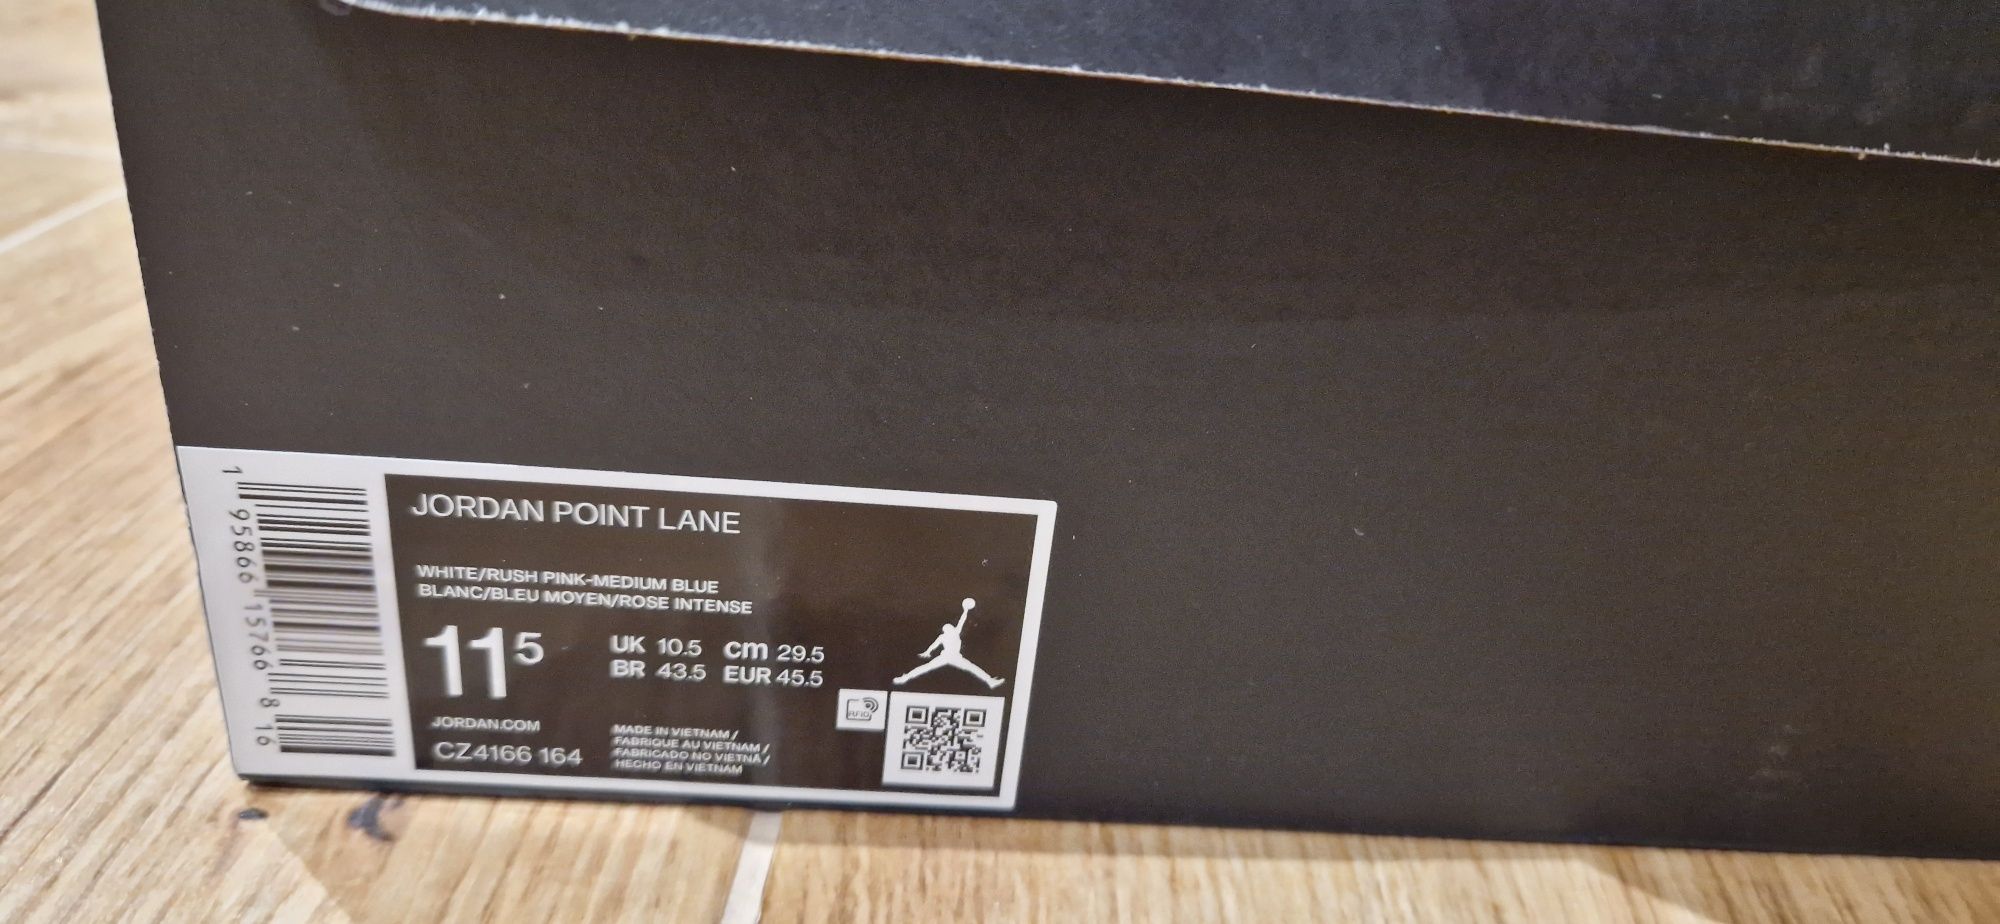 Nike Jordan Point Lane